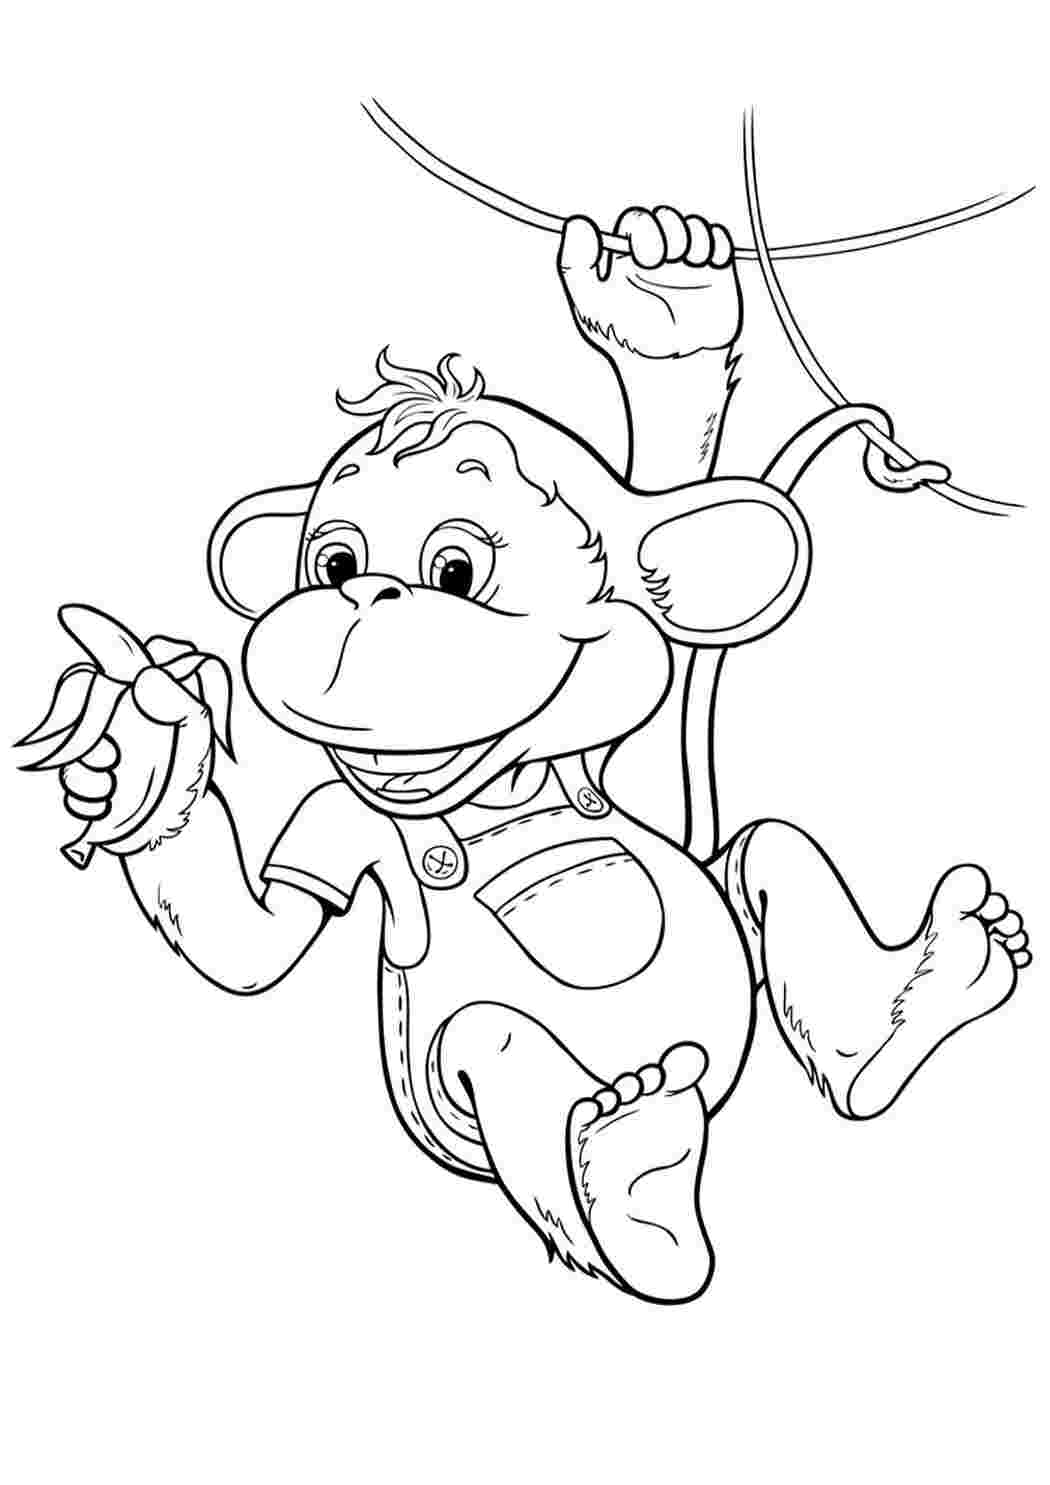 Как нарисовать обезьяну на Новый год, оригинальные и смешные картинки,фото?